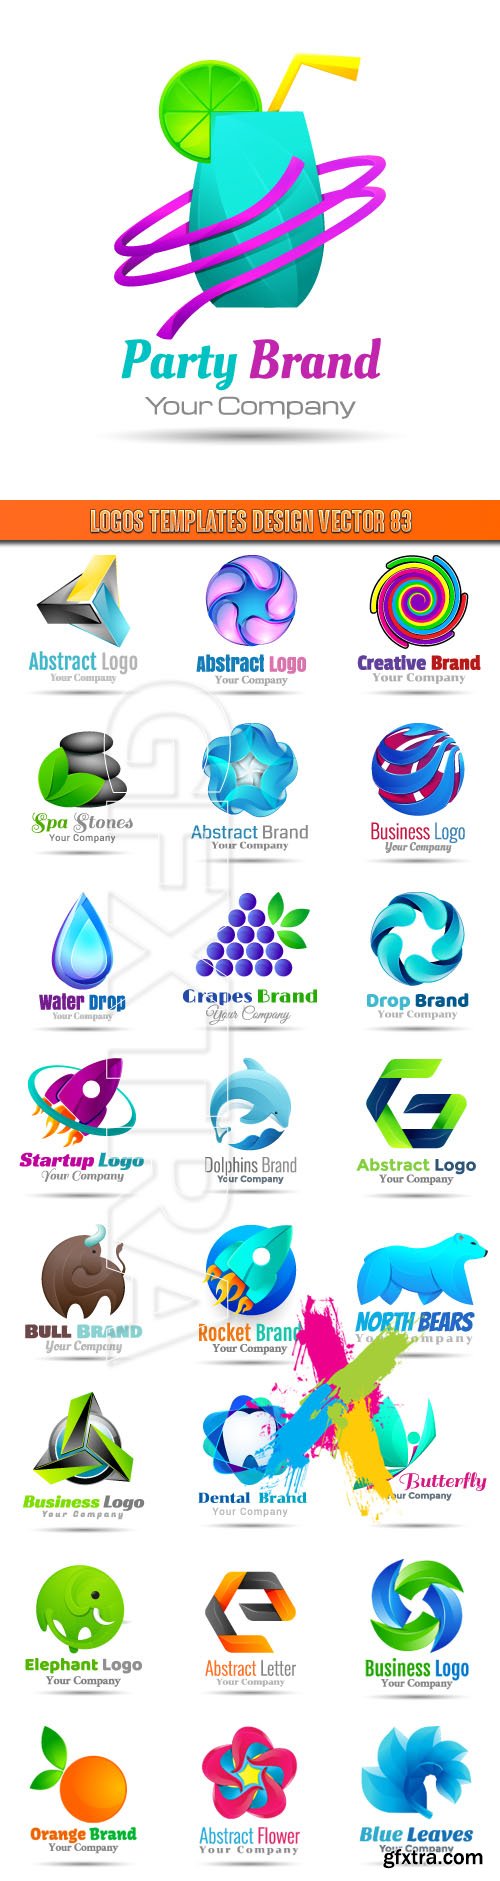 Logos Templates Design Vector 83